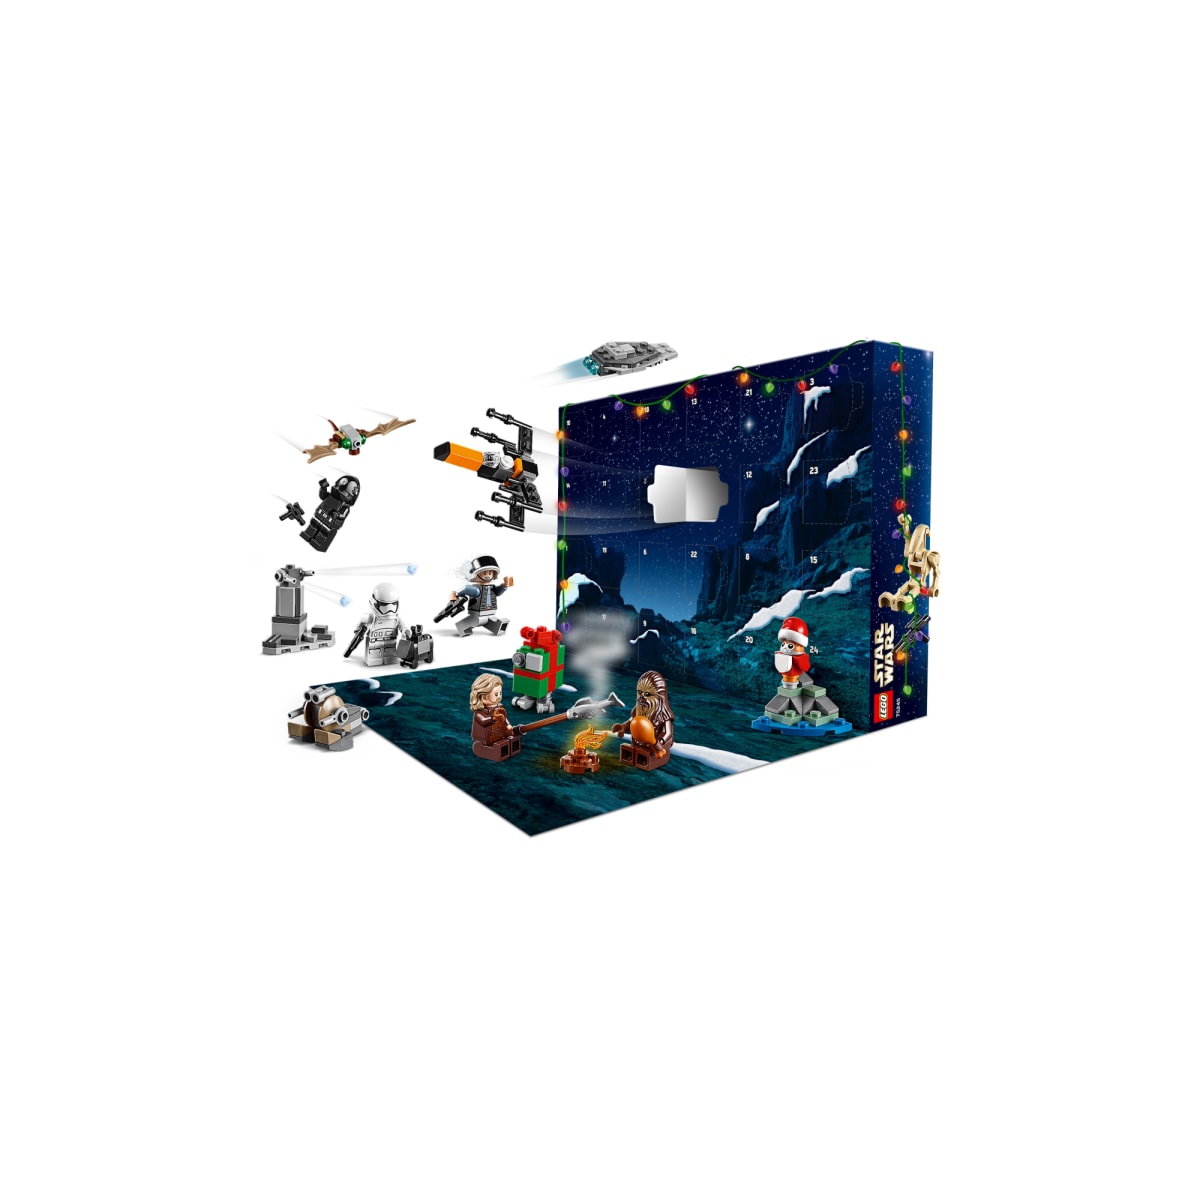 LEGO 75245 Star Wars joulukalenteri | Karkkainen.com verkkokauppa